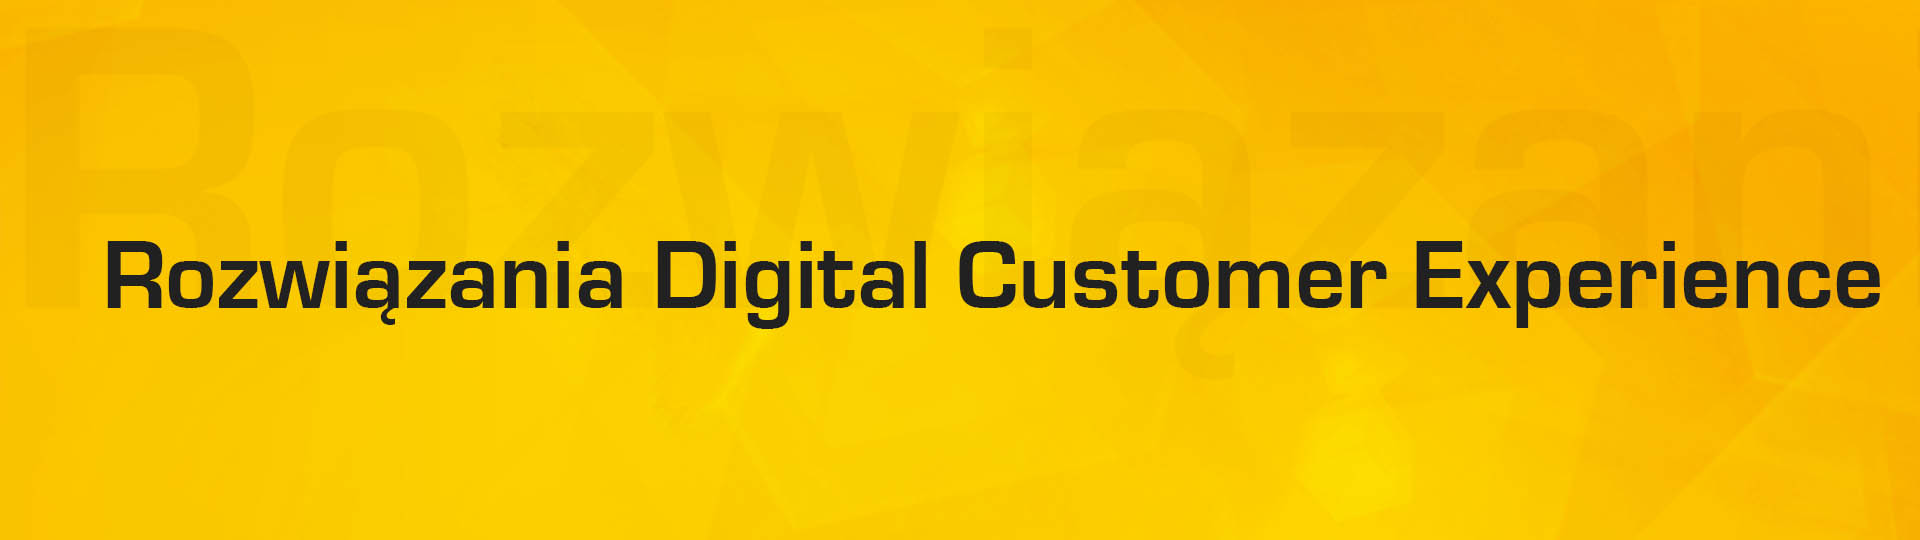 Rozwiazania Digital Customer Experience (DCX)